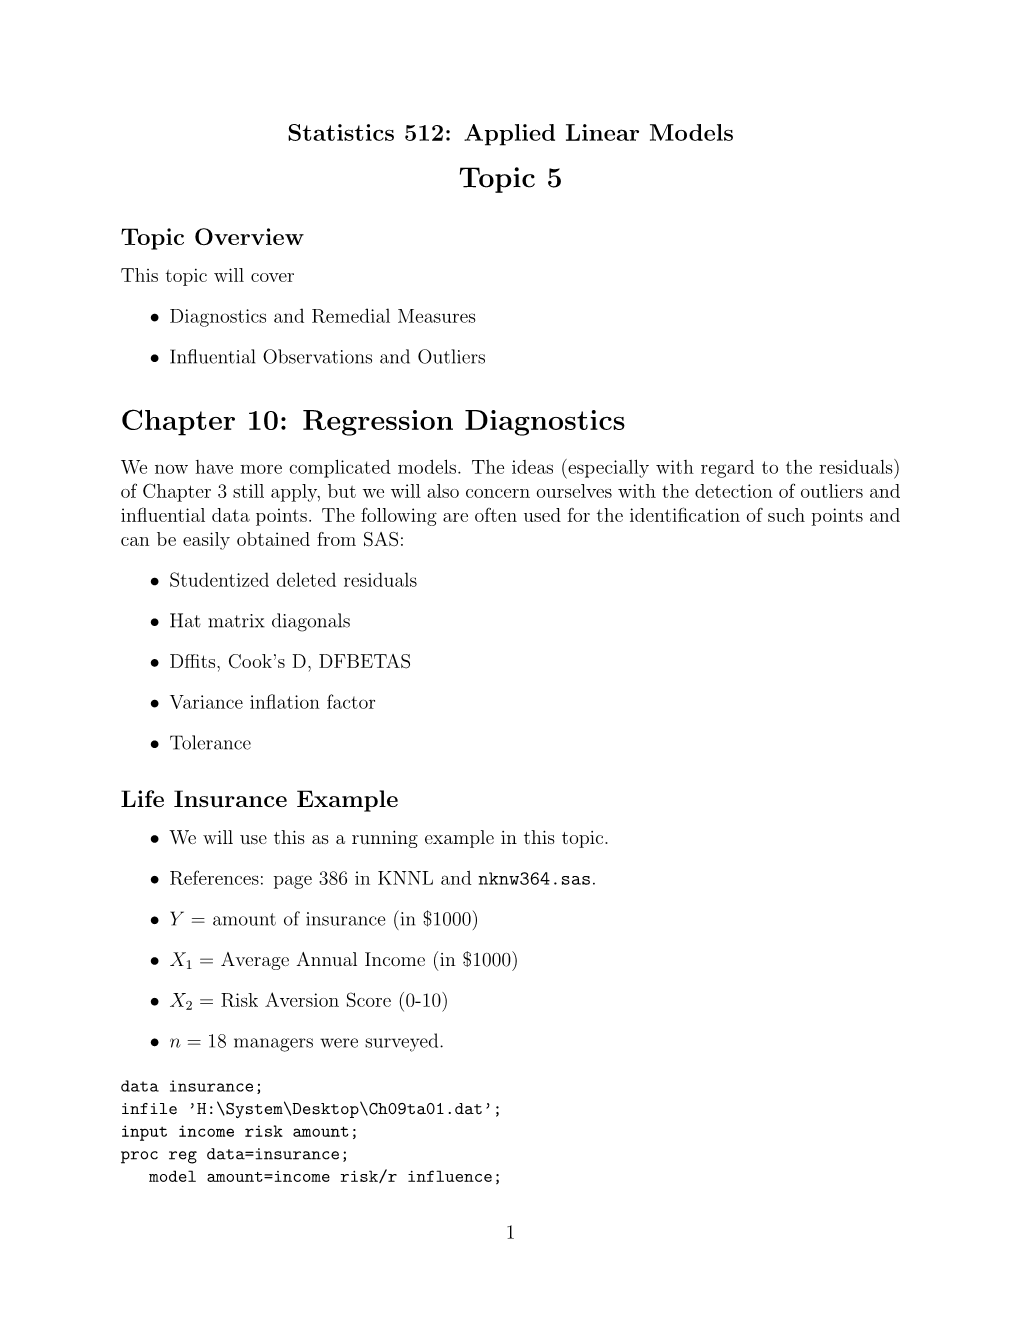 Topic 5 Chapter 10: Regression Diagnostics